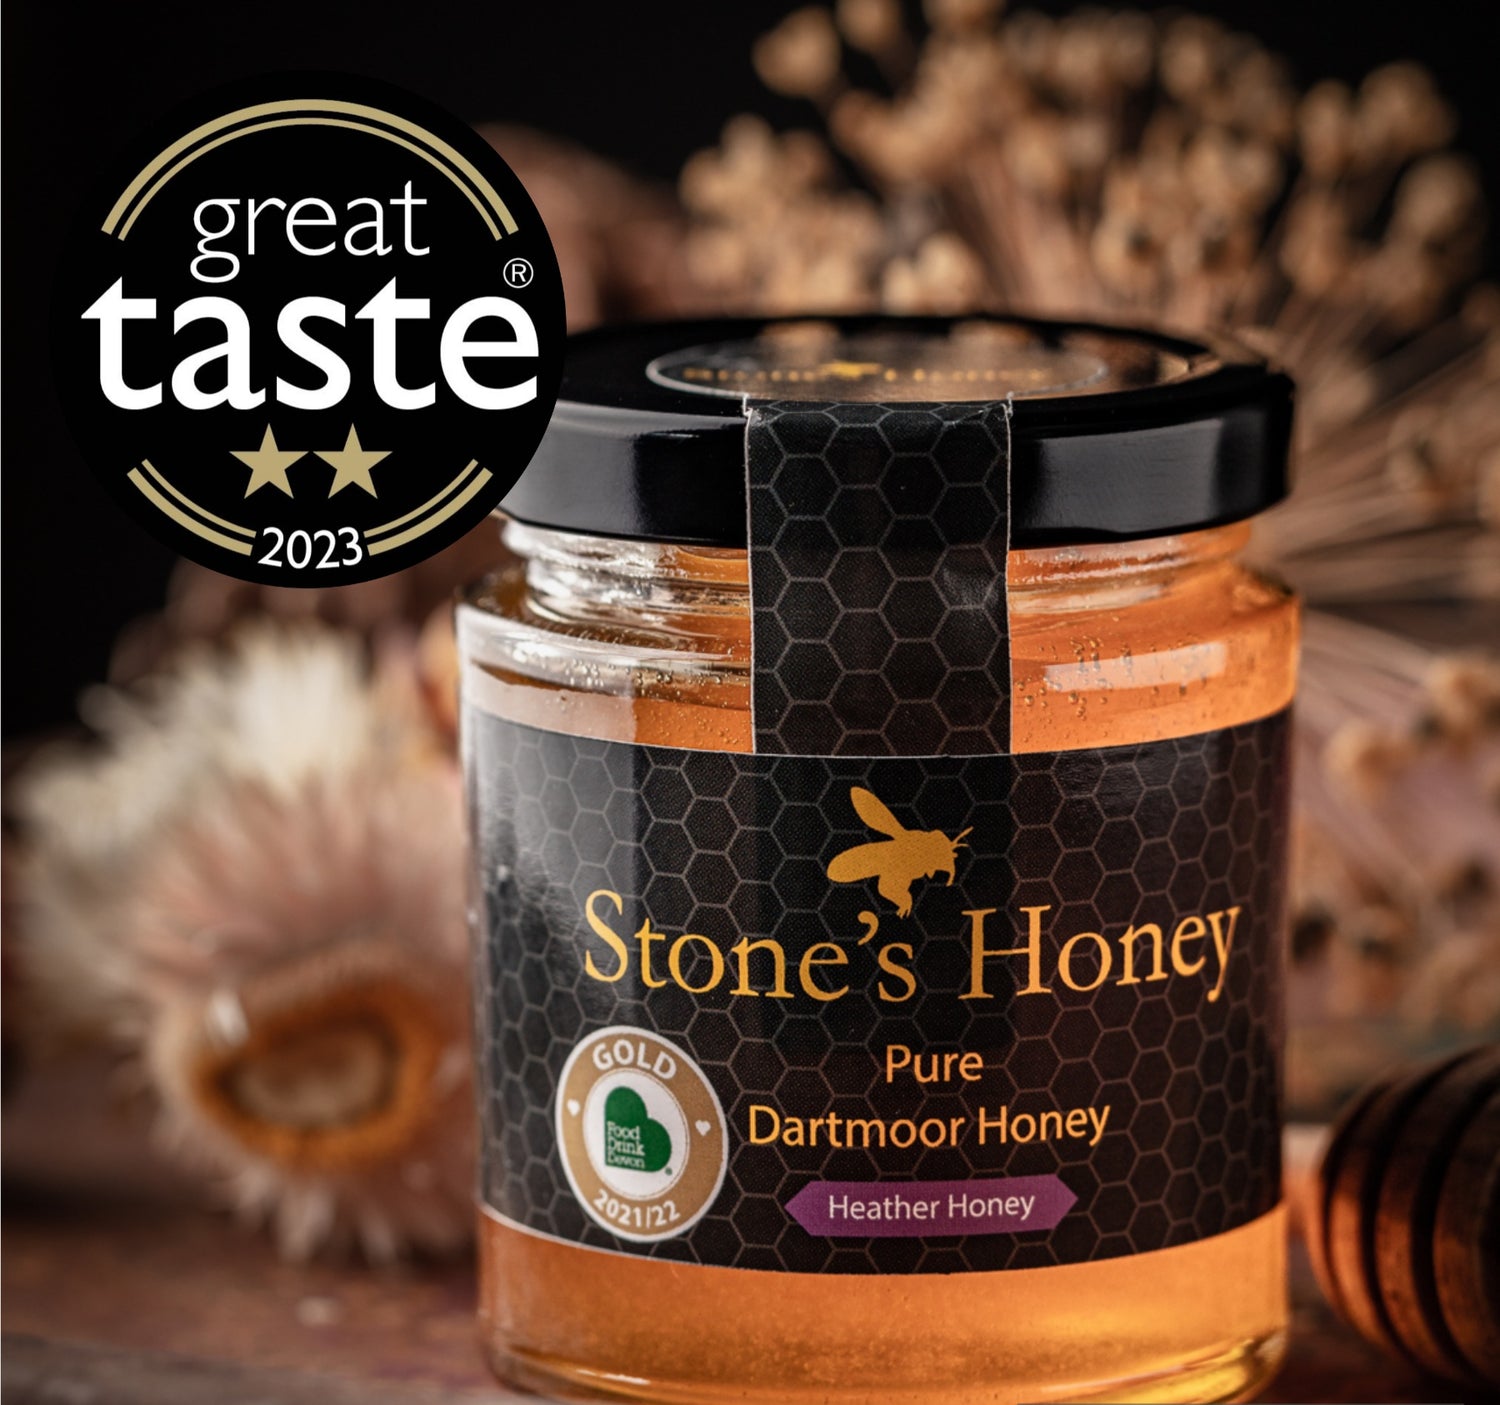 Dartmoor Honey